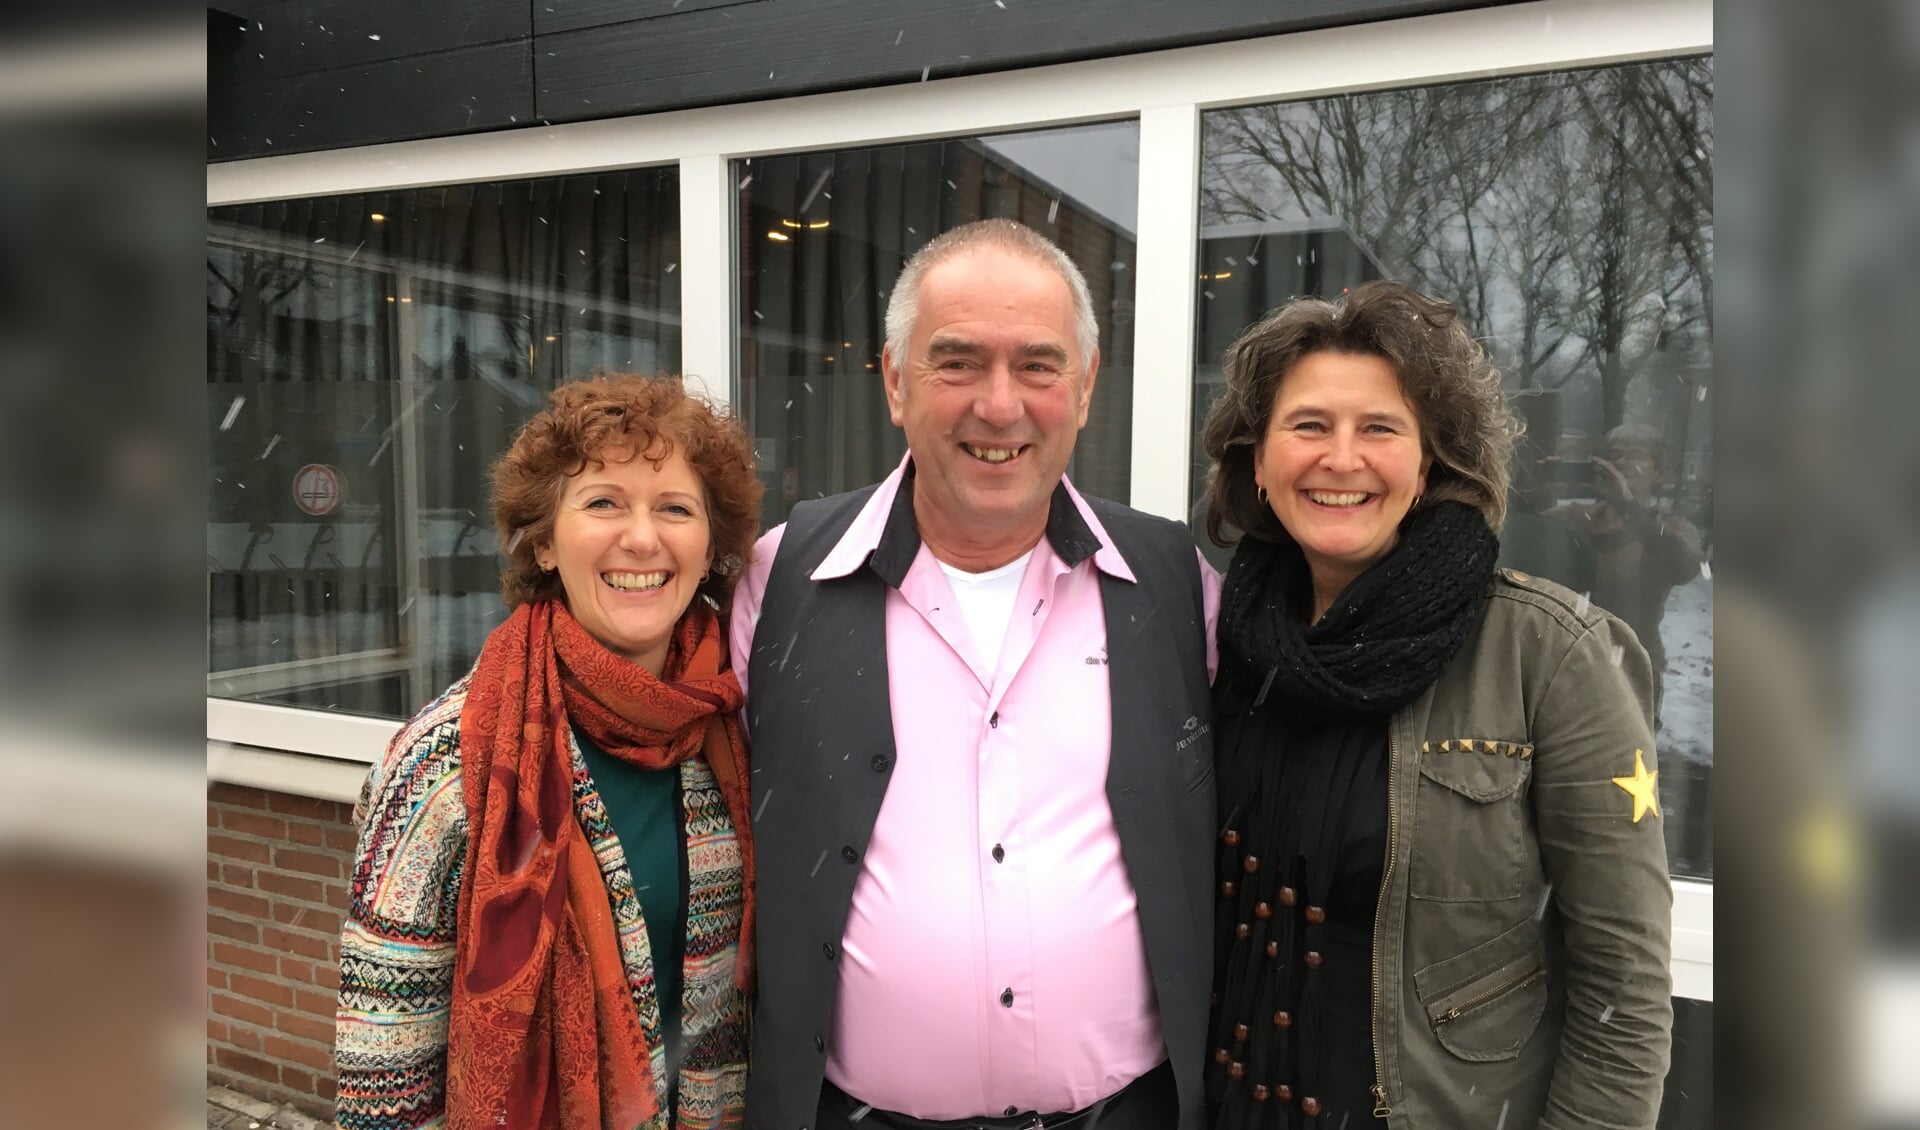  V.l.n.r.: Cynthia Vrijsen, Gerrit Sodaar en Mirjam Valkenburg organiseren de markt Samen Leuke Dingen Doen in De Vierstee.